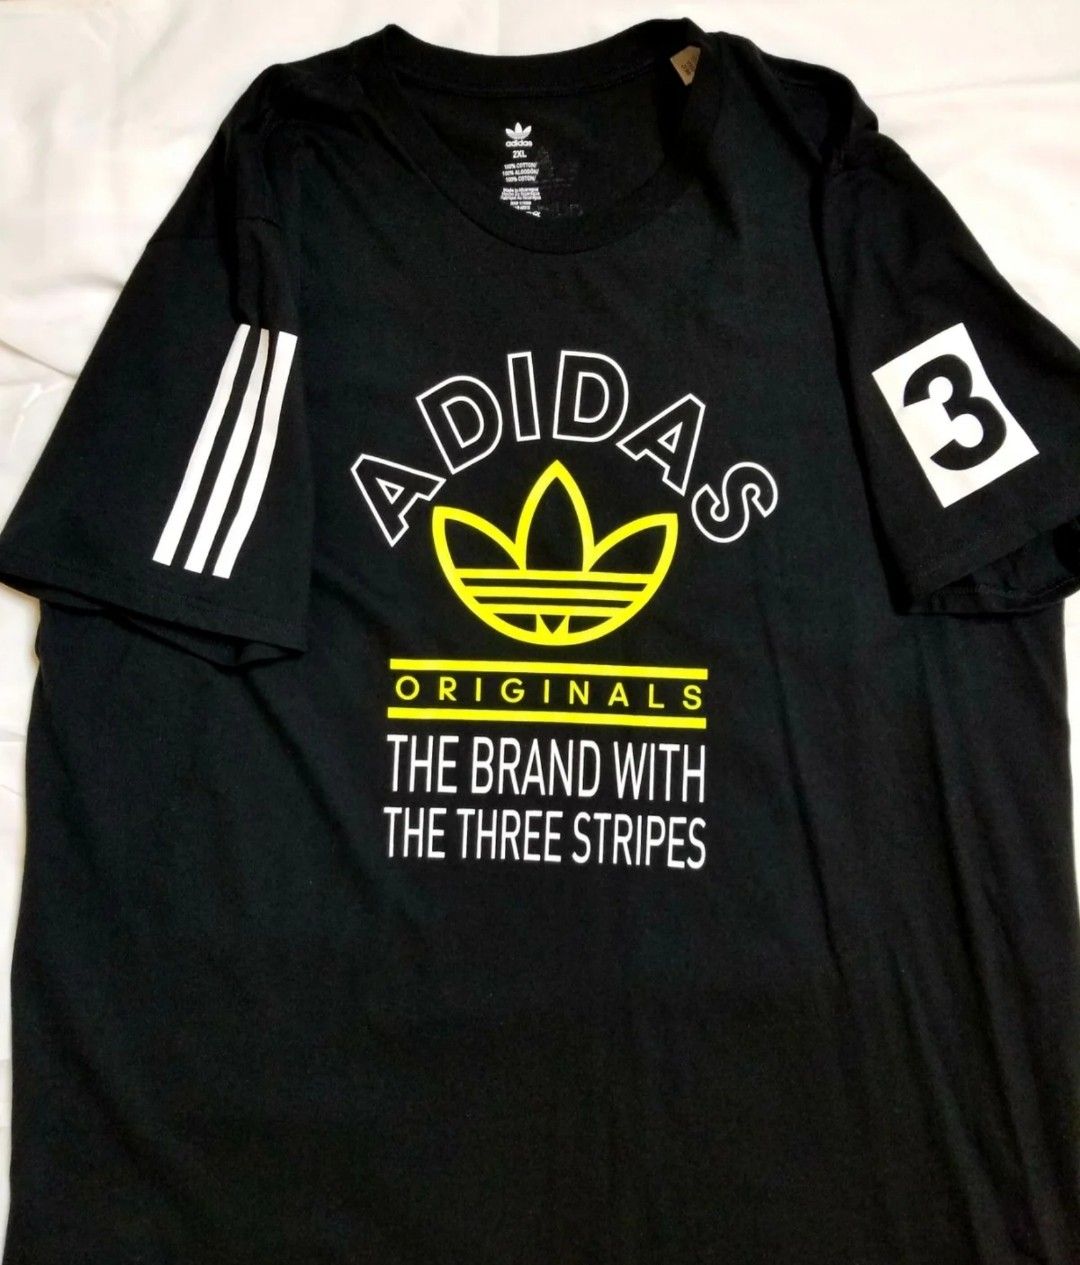 Adidas originals shirt